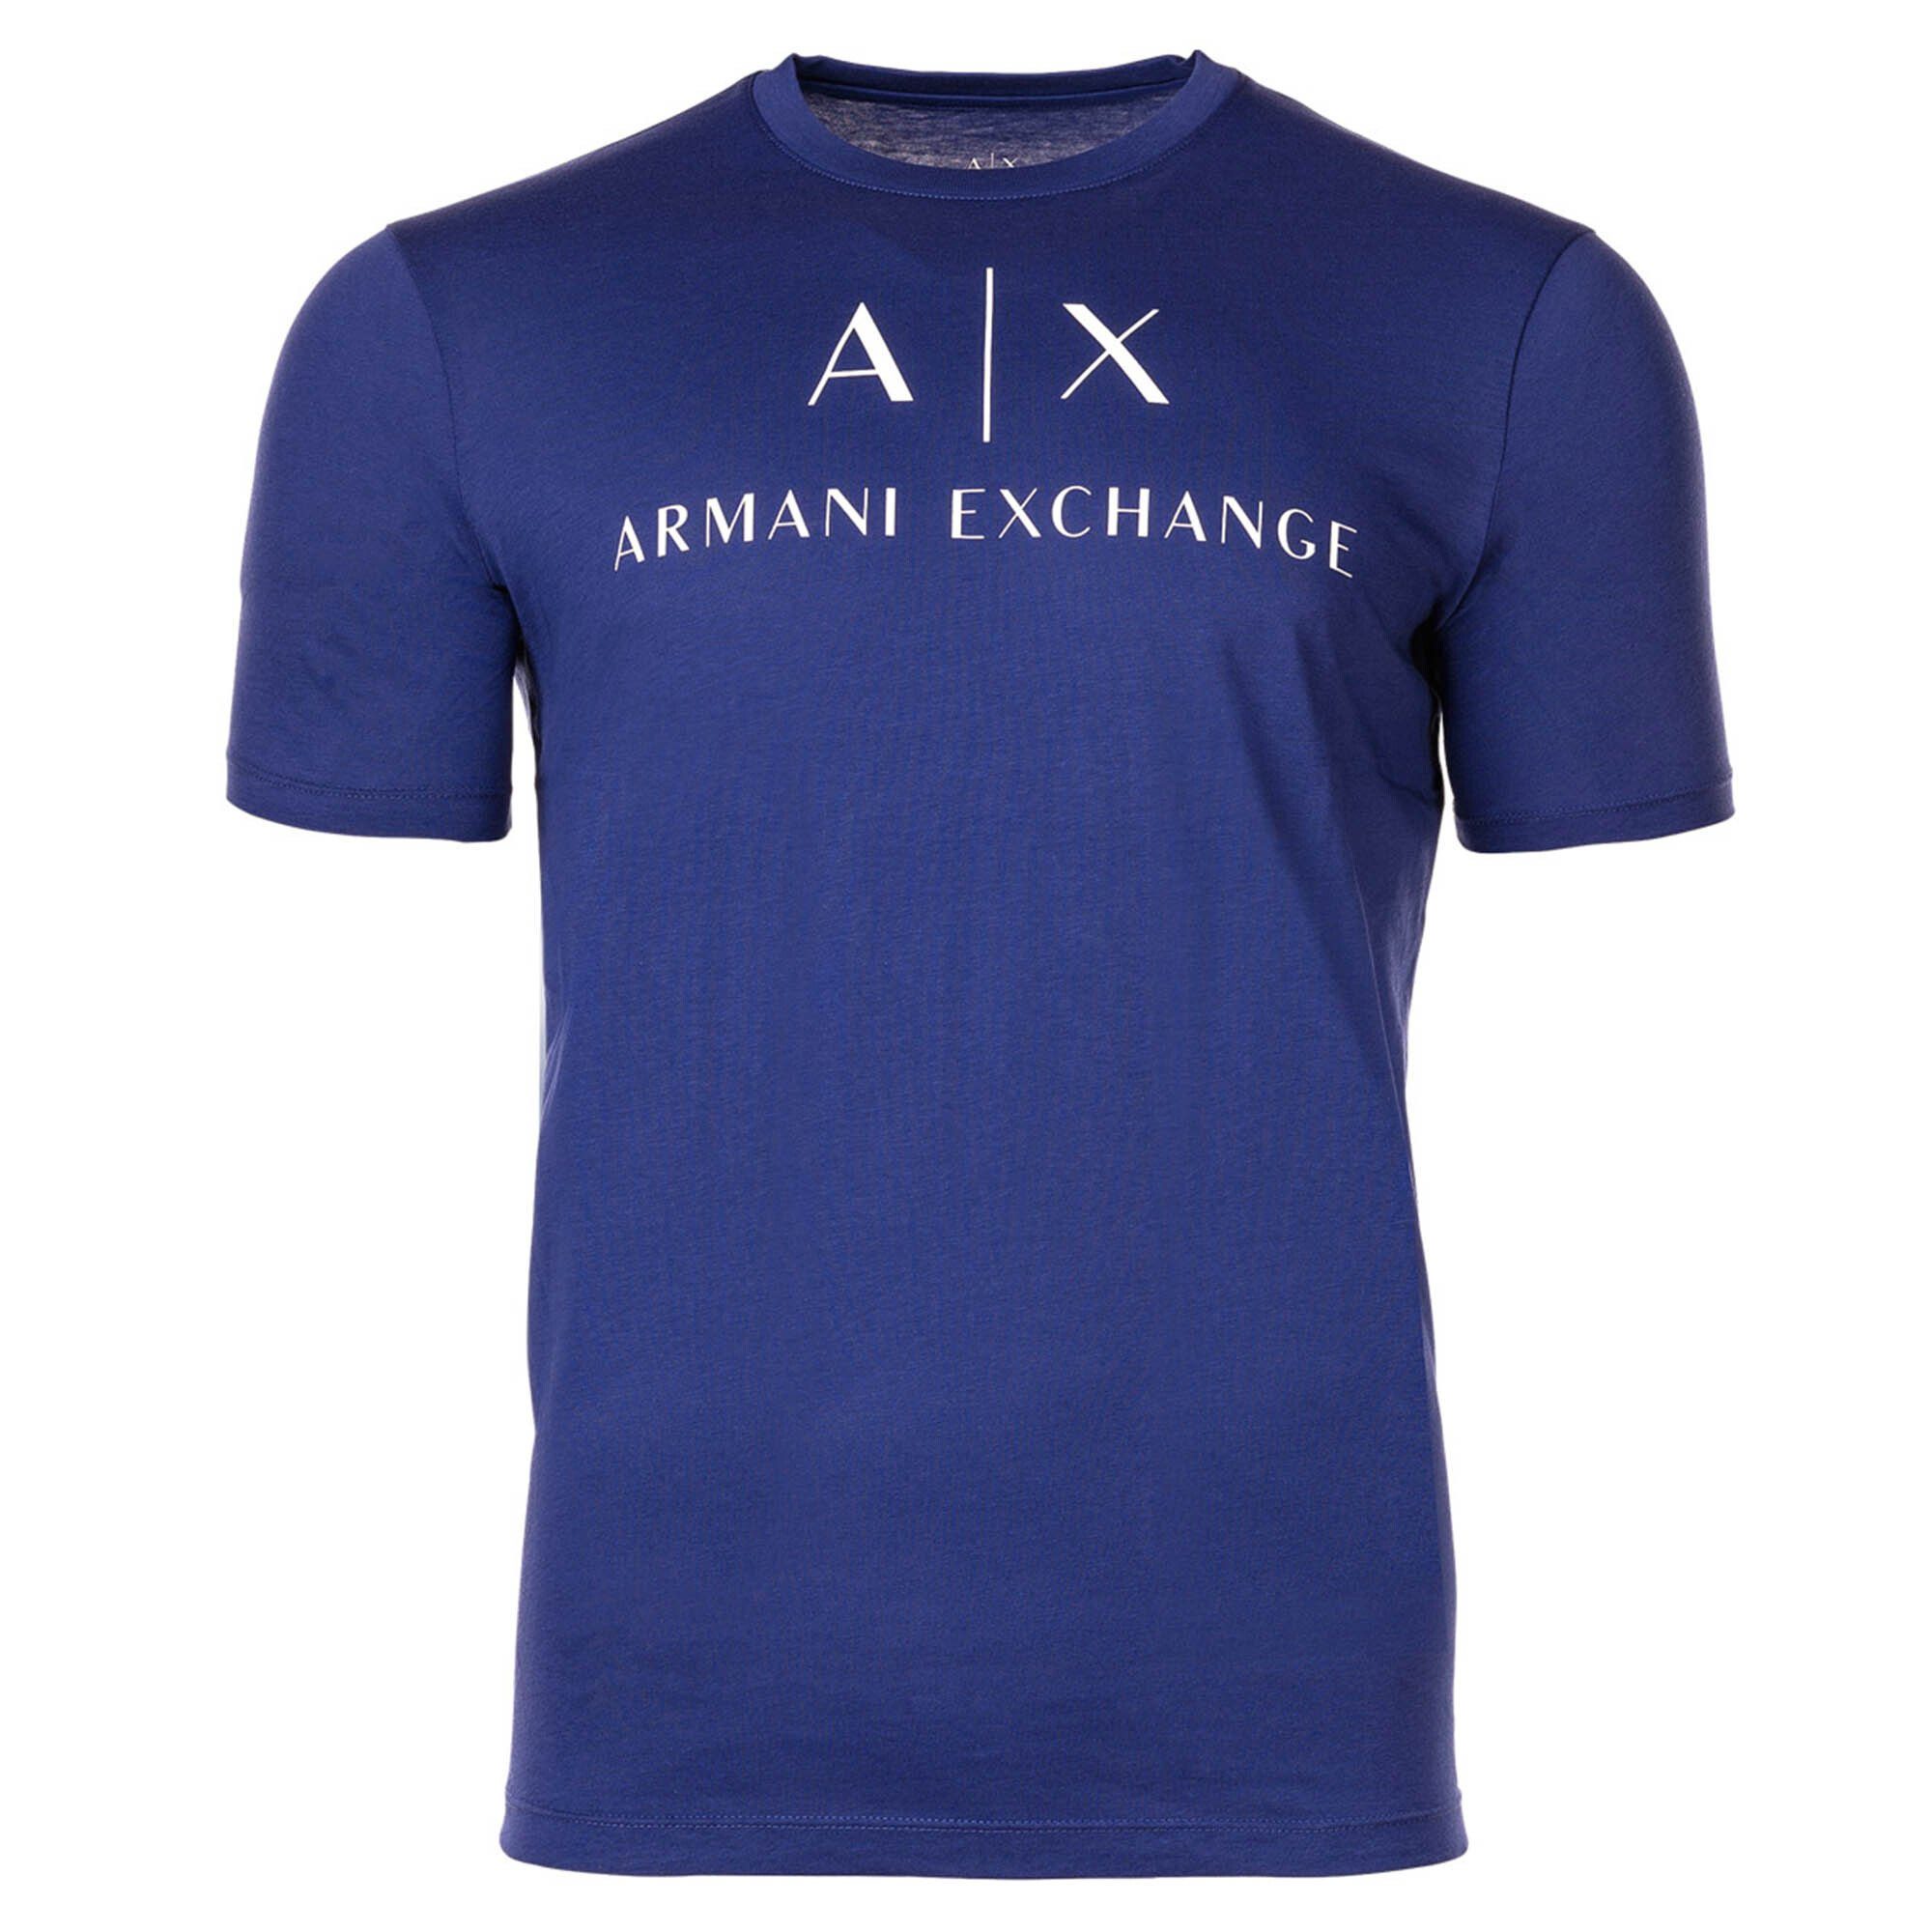 ARMANI EXCHANGE T-Shirt Rundhals, - Schriftzug, T-Shirt Ultramarine) (New Herren Cotton Blau